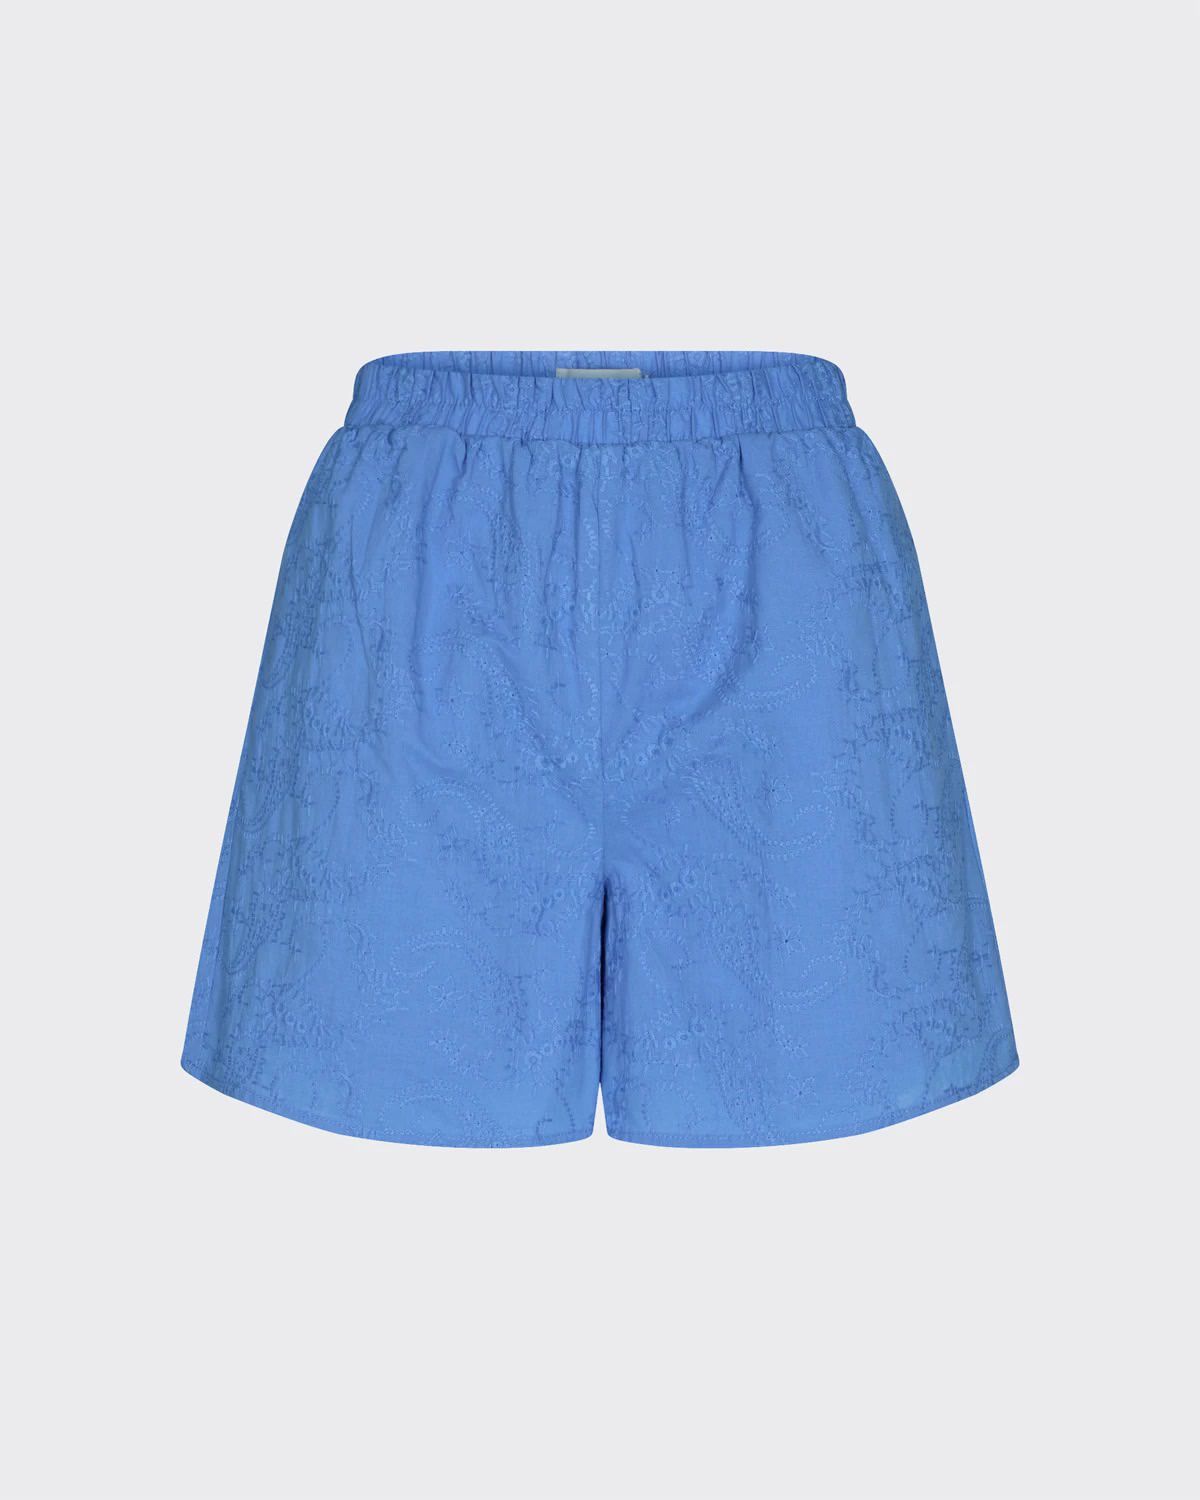 Acazio 8070 Shorts